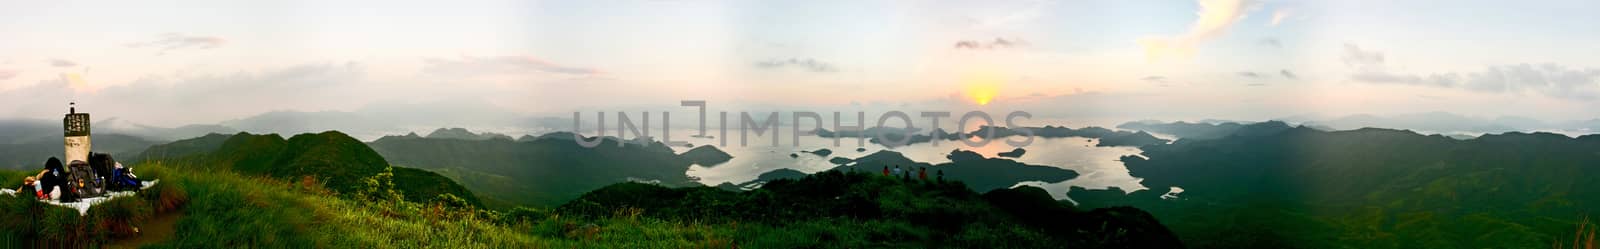 Panorama of sunrise by yayalineage